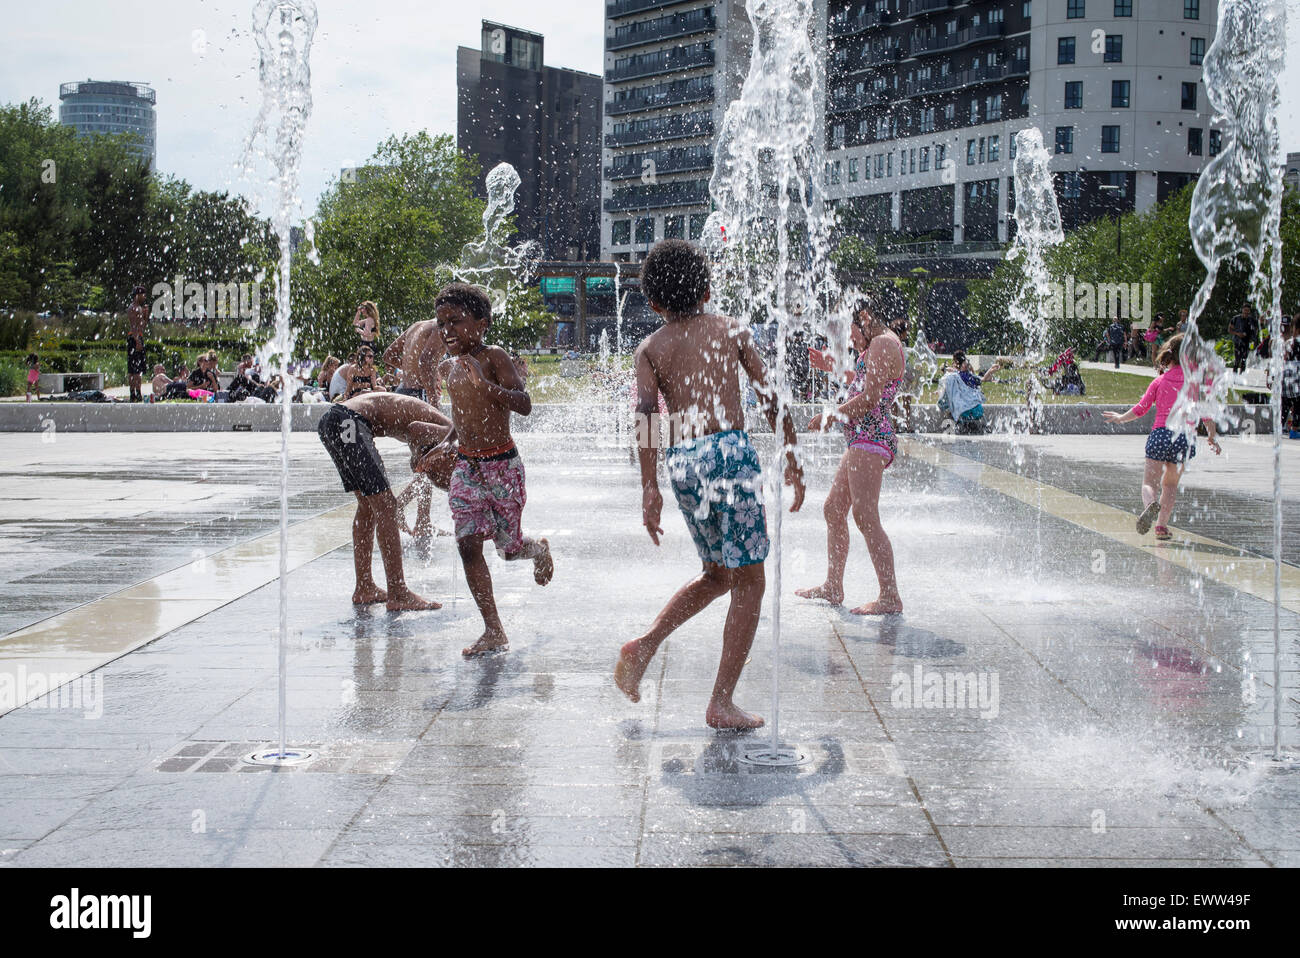 Birmingham, UK, 1. Juli 2015. Kinder, die Abkühlung im Brunnen in der Nähe von Stadtzentrum von Birmingham, wie das Vereinigte Königreich Juli Rekord hohe Temperatur 36,7 C erlebt. Bildnachweis: Andrew Fox/Alamy Live-Nachrichten Stockfoto